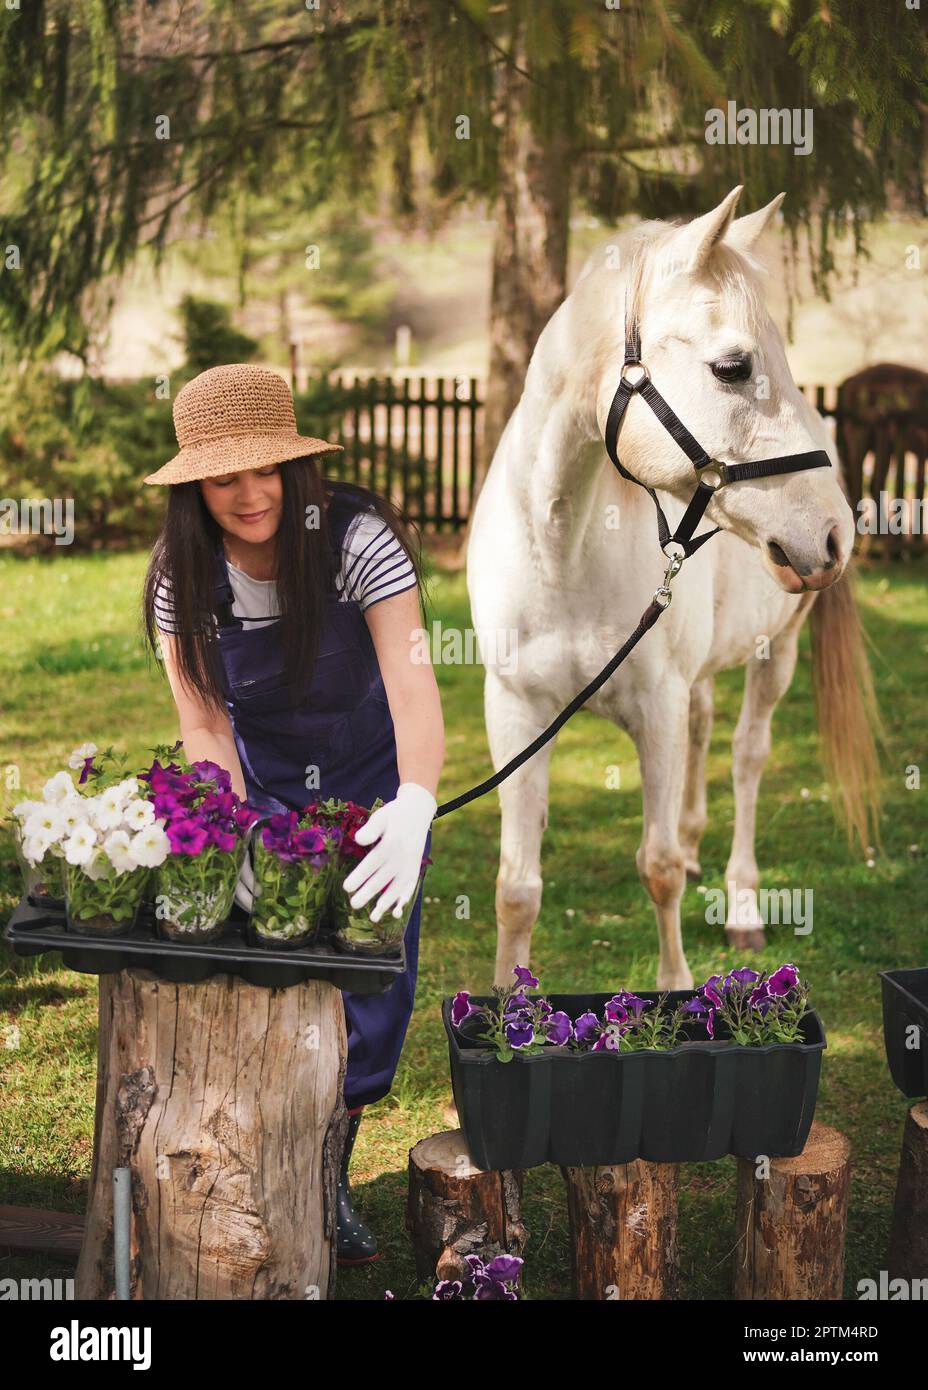 Frau in Arbeitskleidung, Handschuhe und Strohhut, die mit Blumen im Garten arbeitet, weißes arabisches Pferd in der Nähe, unscharfe grüne Bäume und Gartenhintergrund Stockfoto